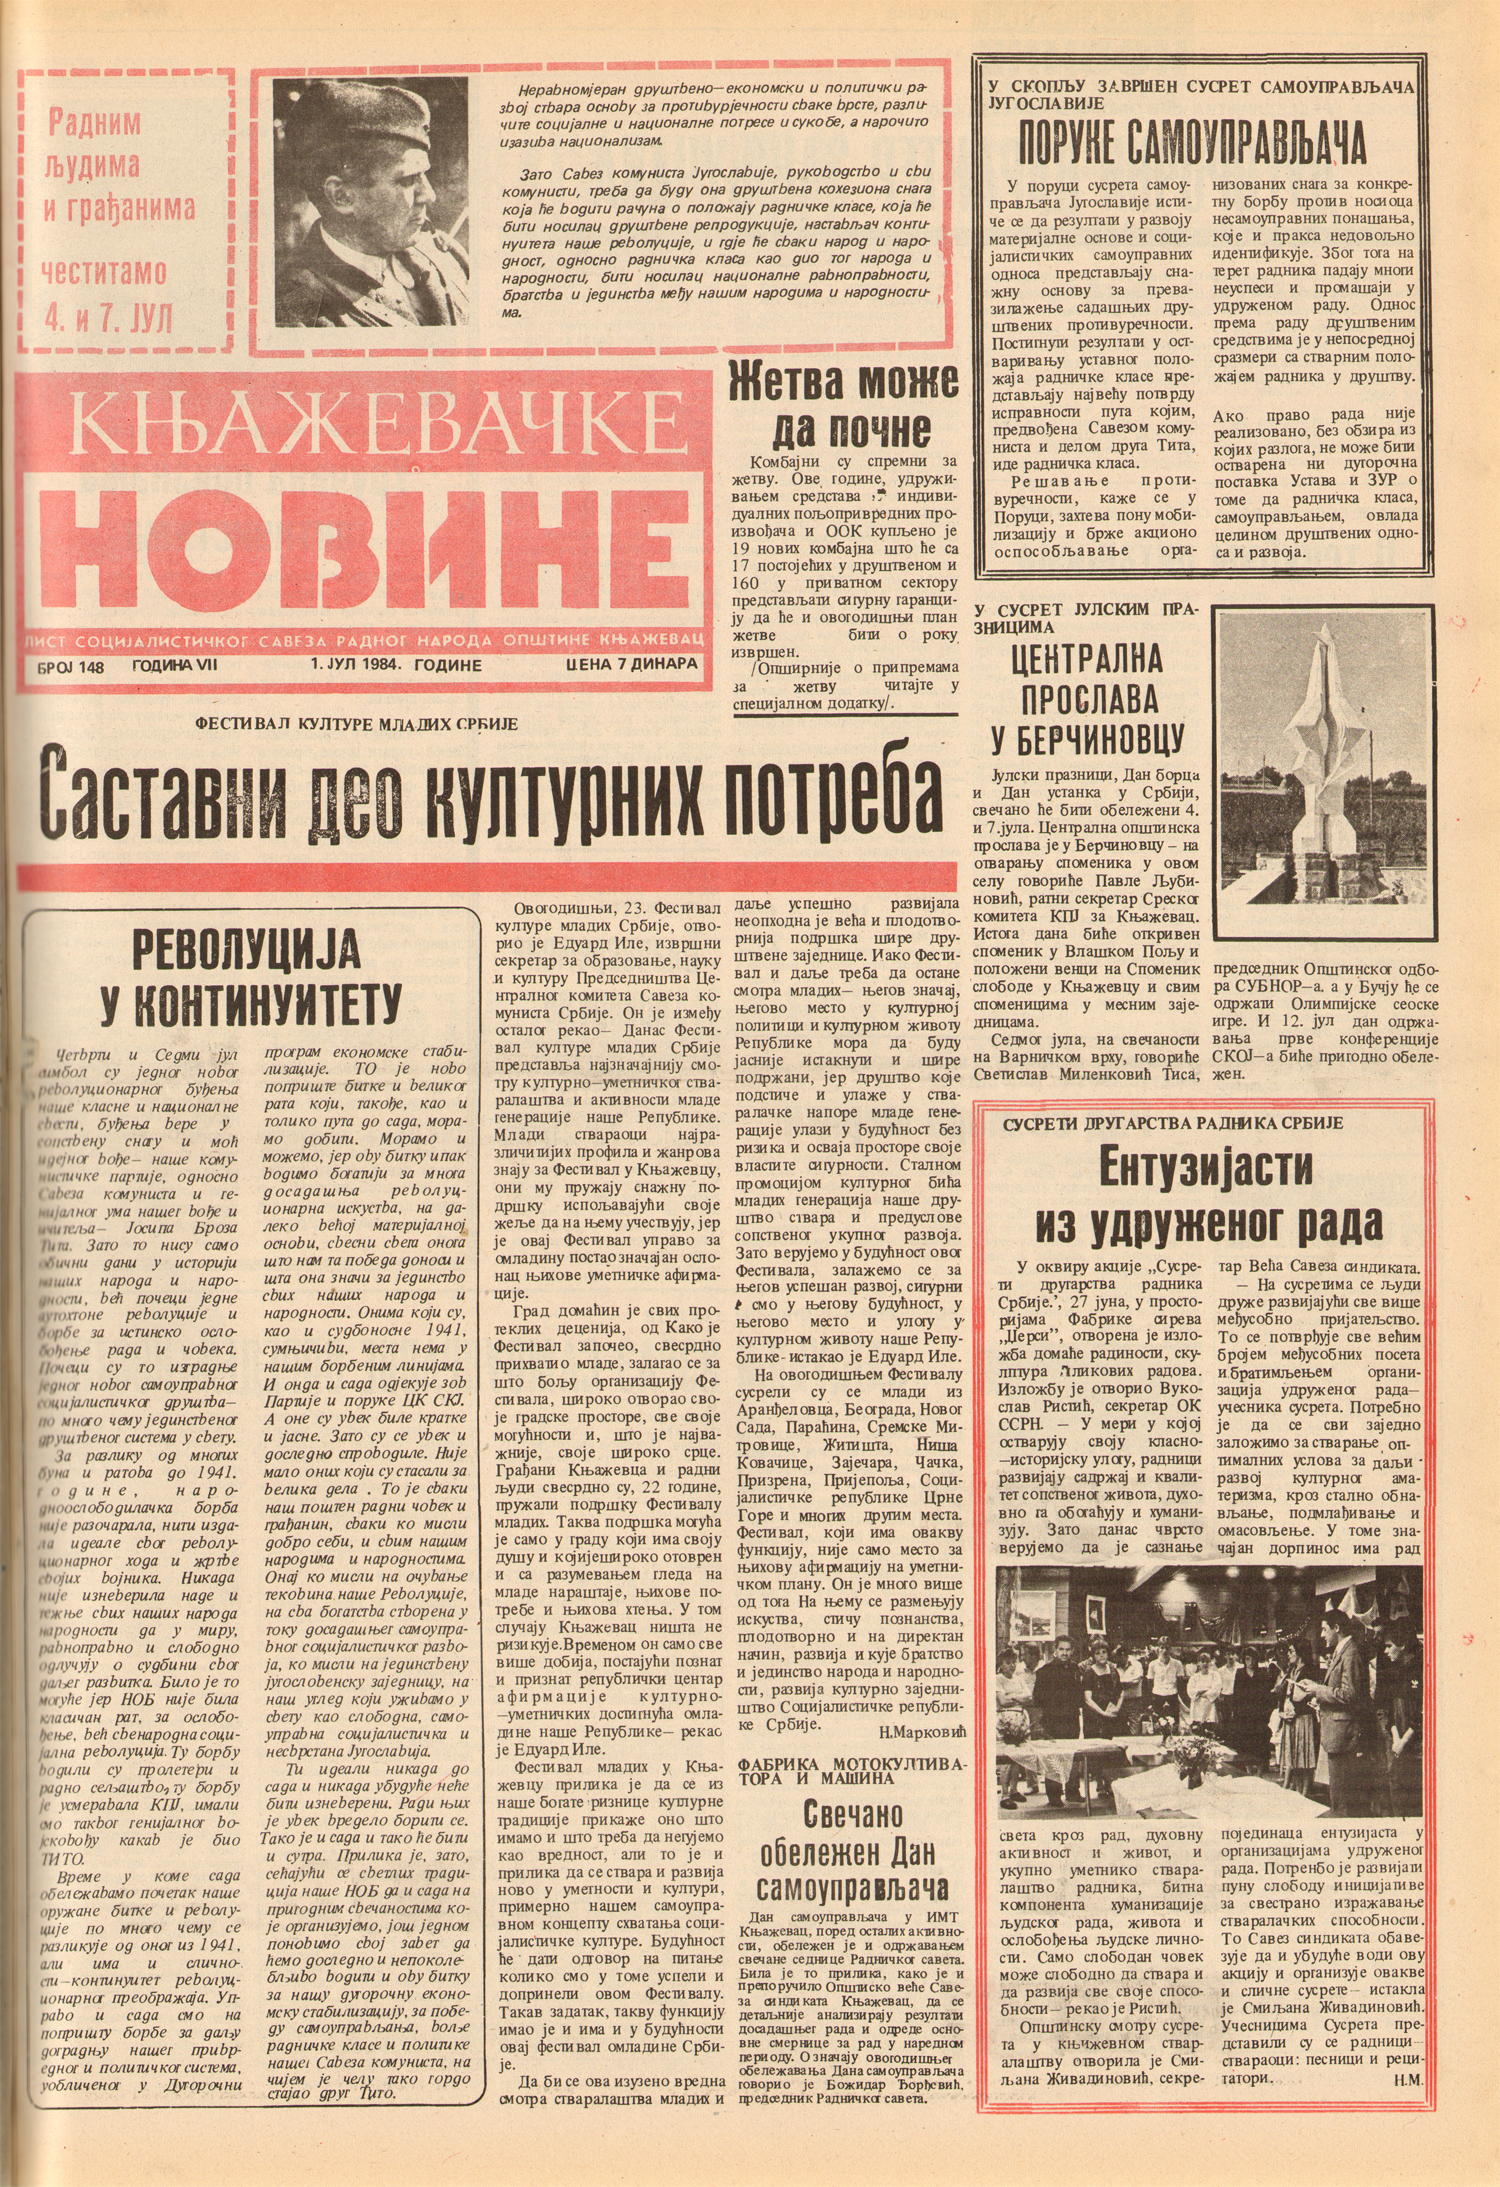 Књажевачке новине, број 148, година 1984